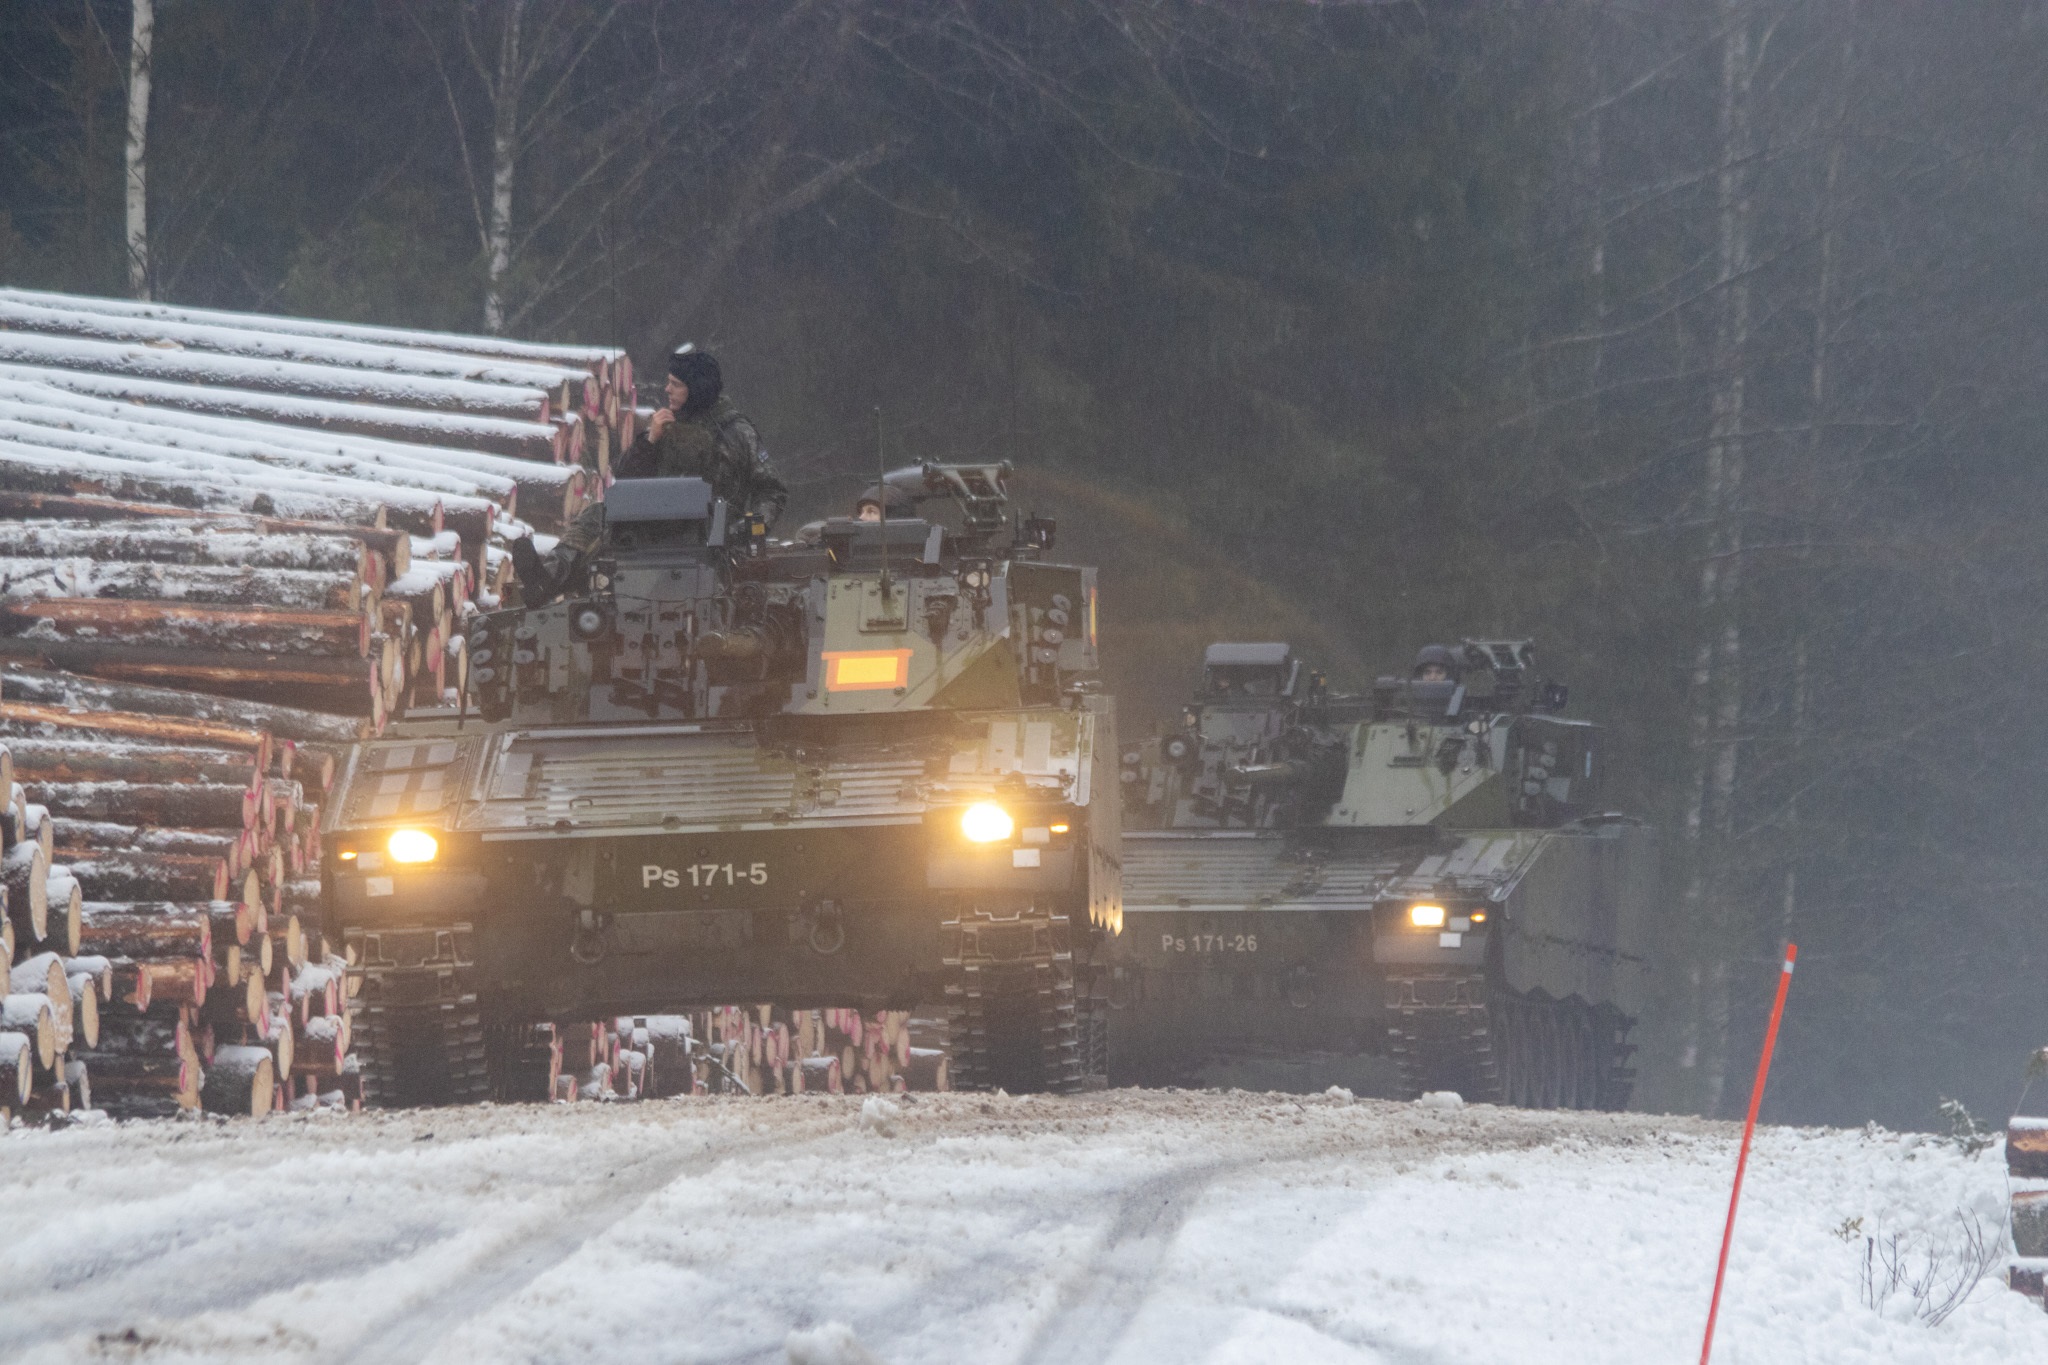 Rynnäkköpanssarivaunuja CV9030 (kaksi peräkkäin) tiellä.